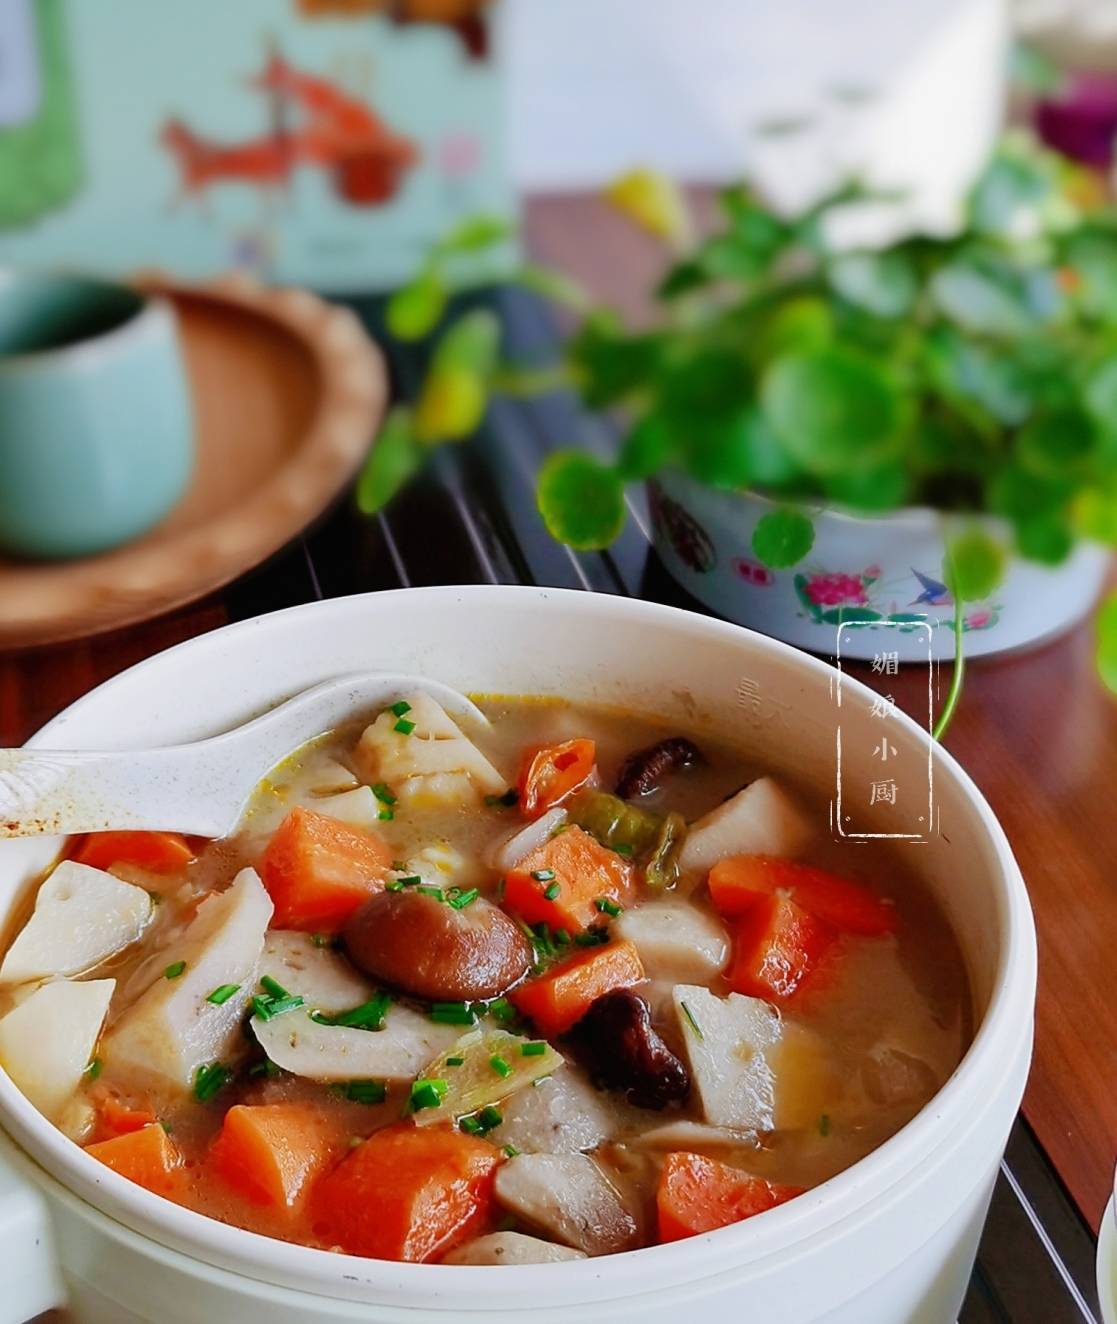 素食自制 | 越南汤粉 - 哔哩哔哩